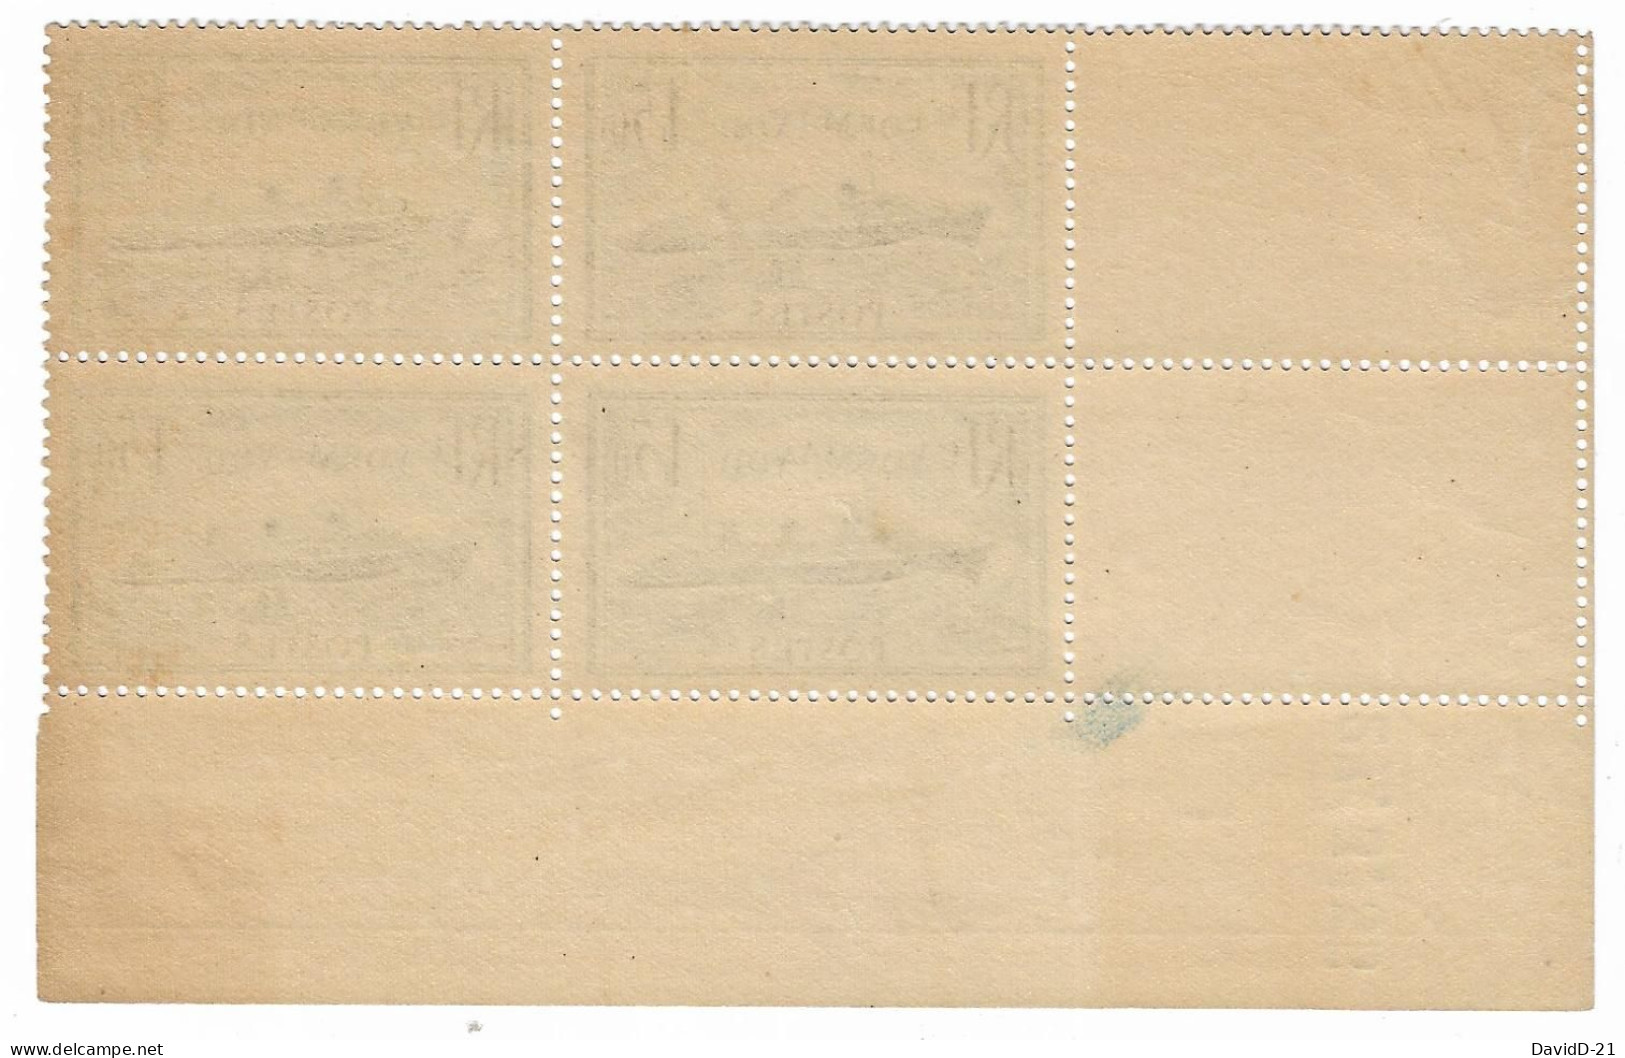 0299. COIN DATE Bloc De 4 - 27 Mars 1935 - N°299 Normandie (Bleu-foncé) - NEUF Gomme D'origine - Côte 175eu. - 1930-1939